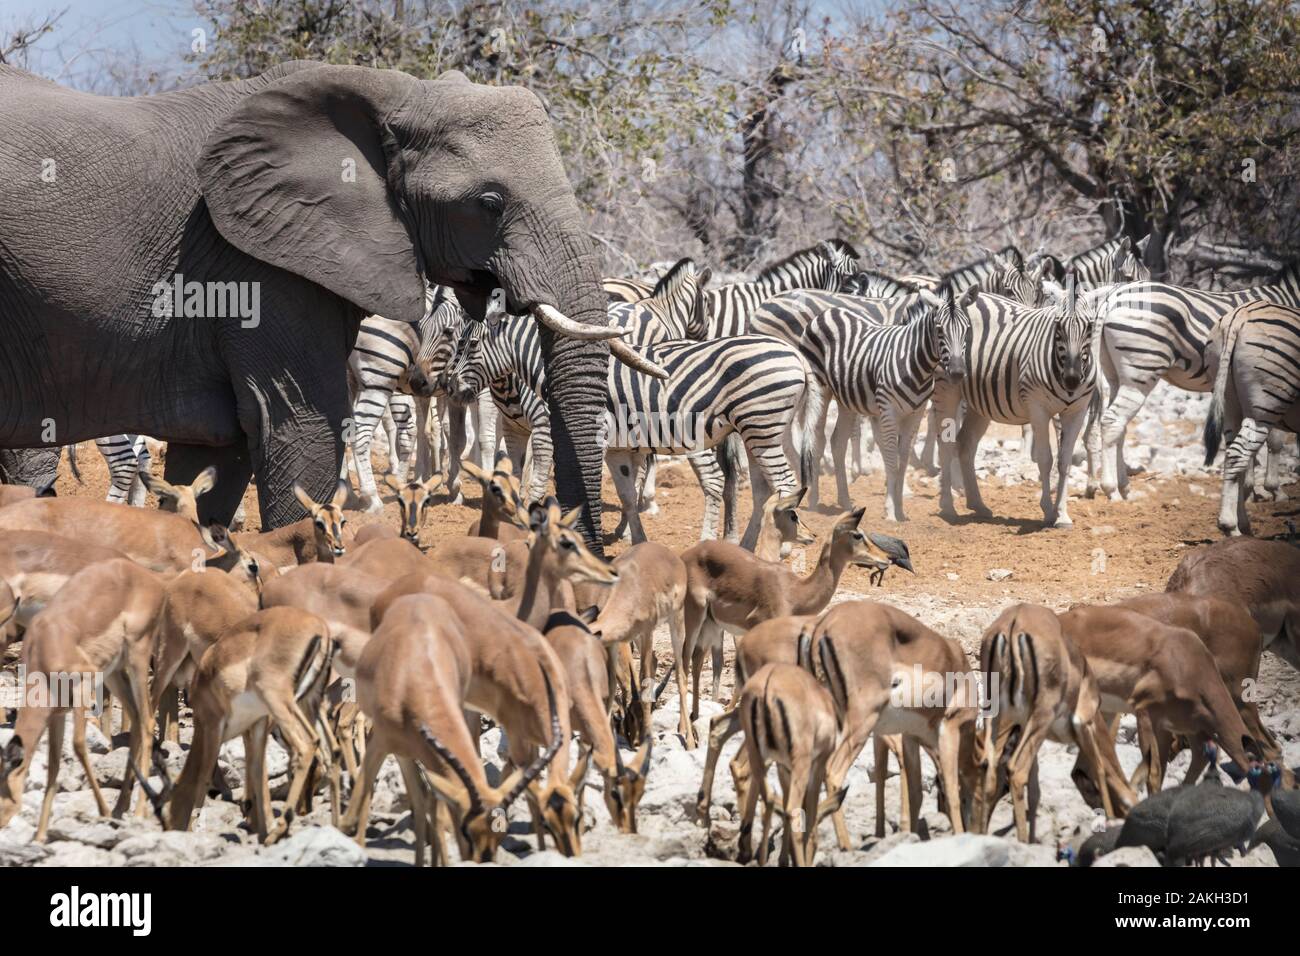 Namibia, Oshikoto province, Etosha National Park, elephant, zebras and impalas Stock Photo